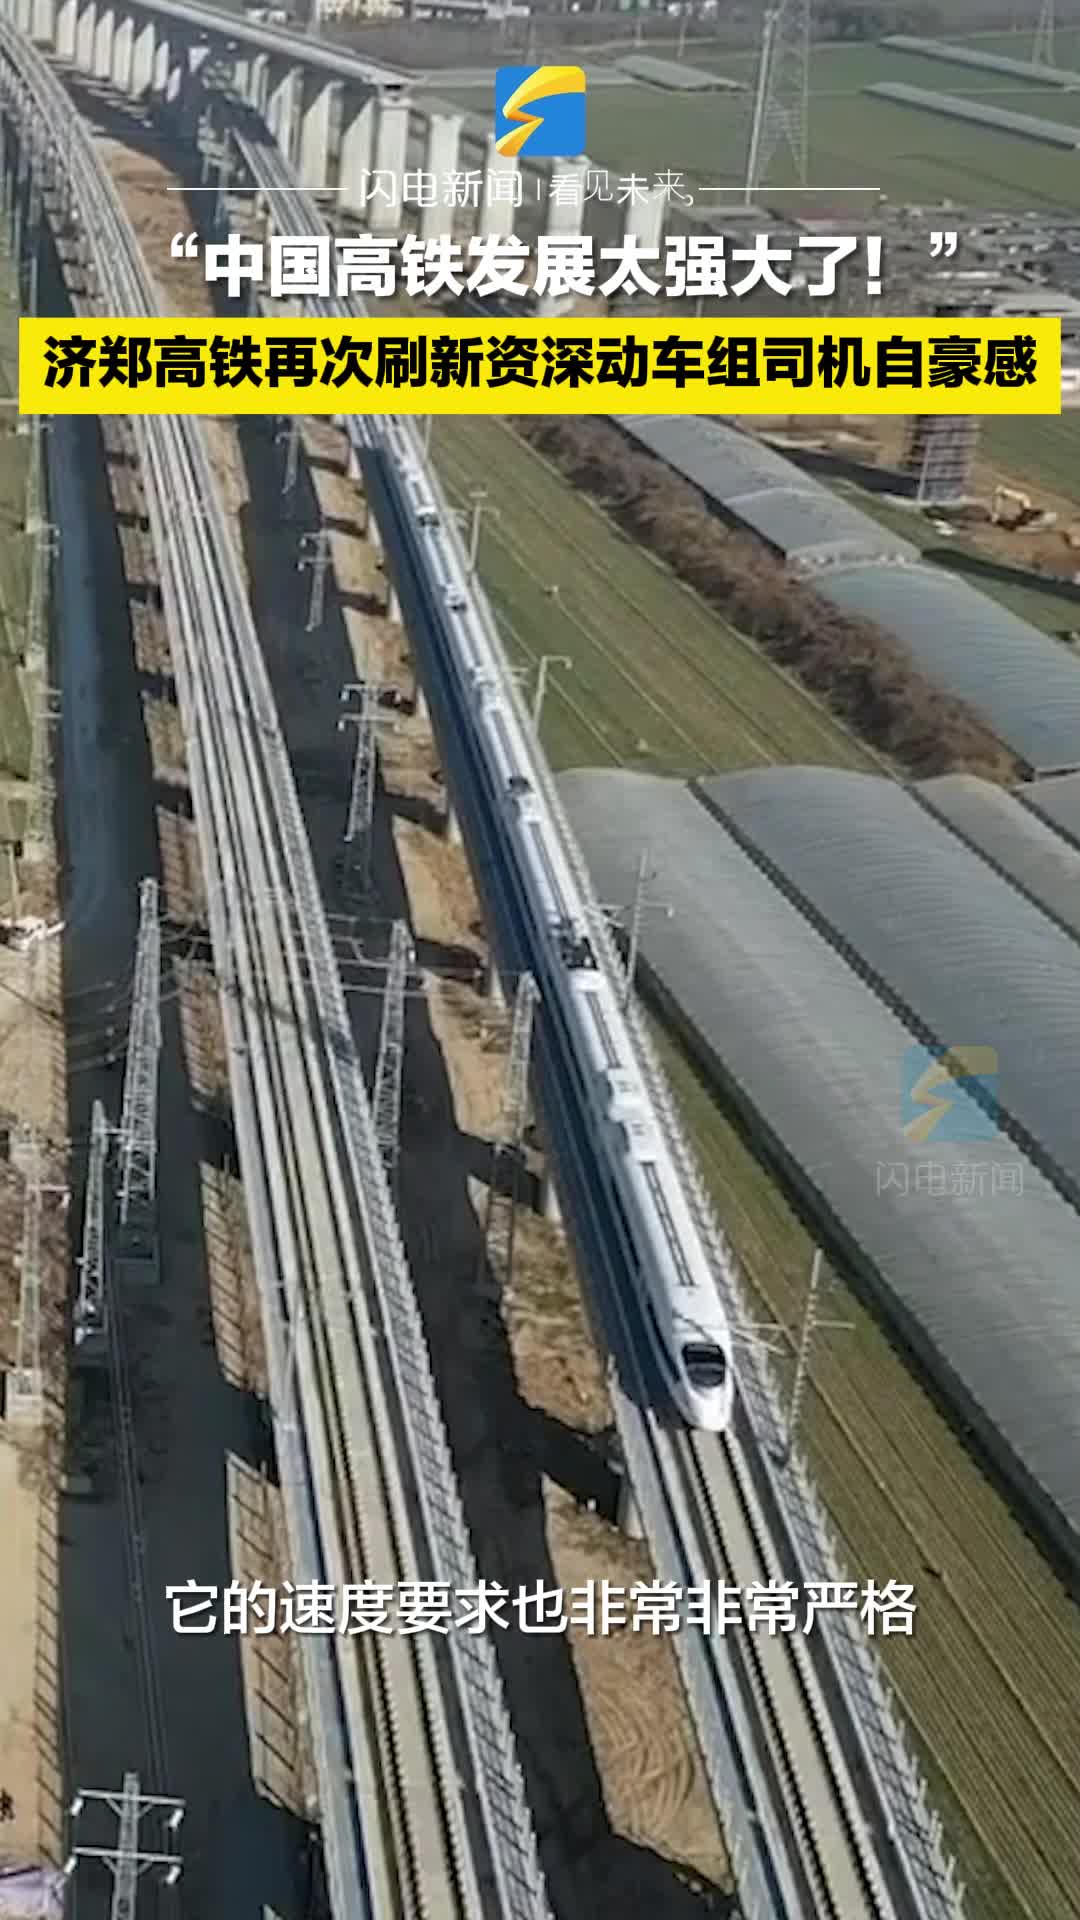 “中国高铁发展太强大了！” 济郑高铁再次刷新资深动车组司机自豪感